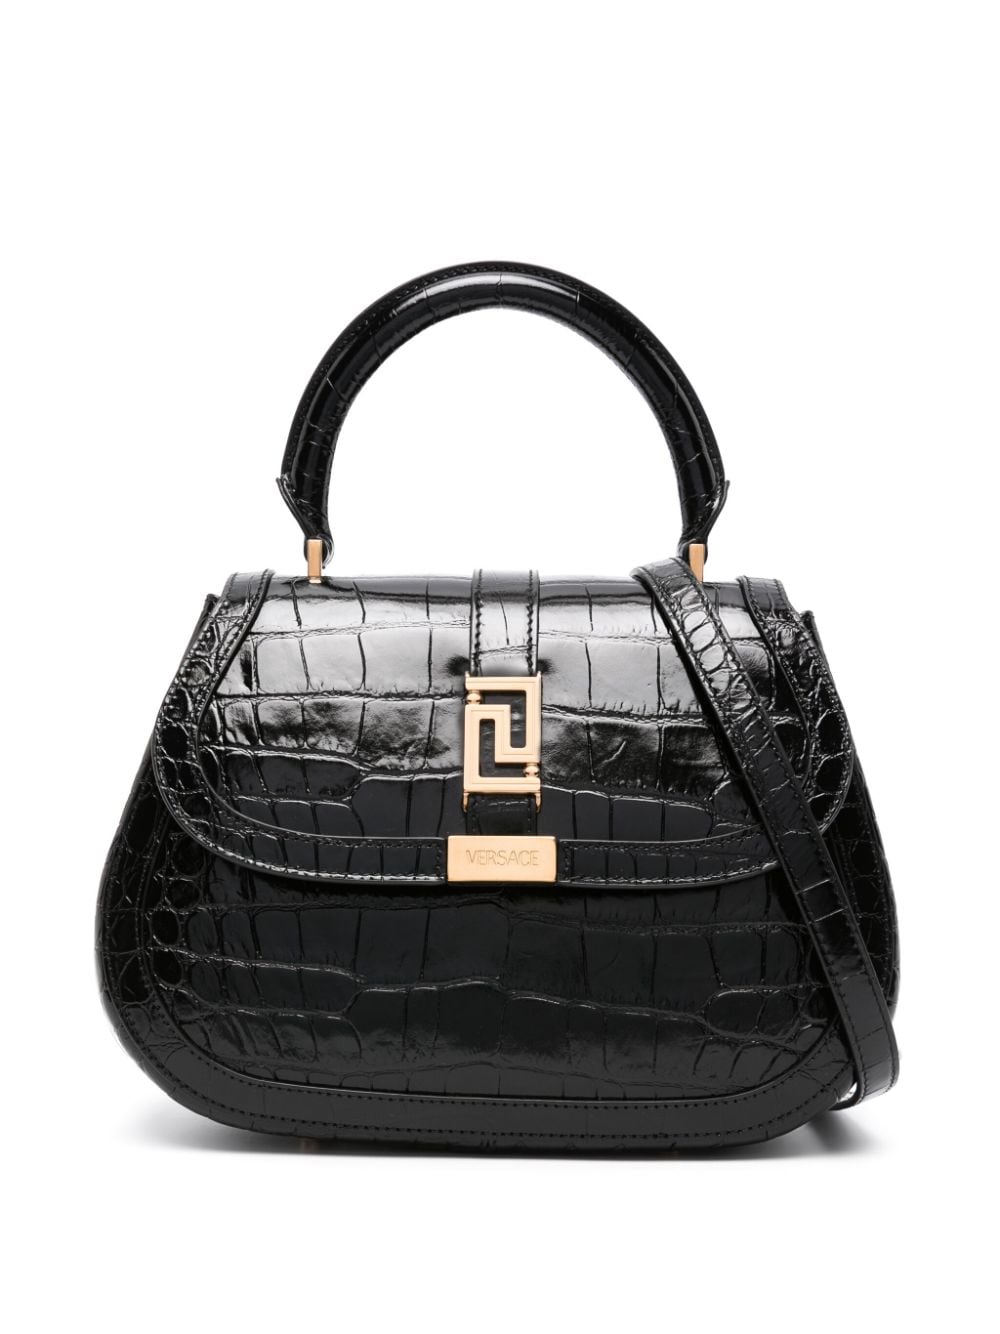 Versace Greca Goddess Leather Tote Bag In Black